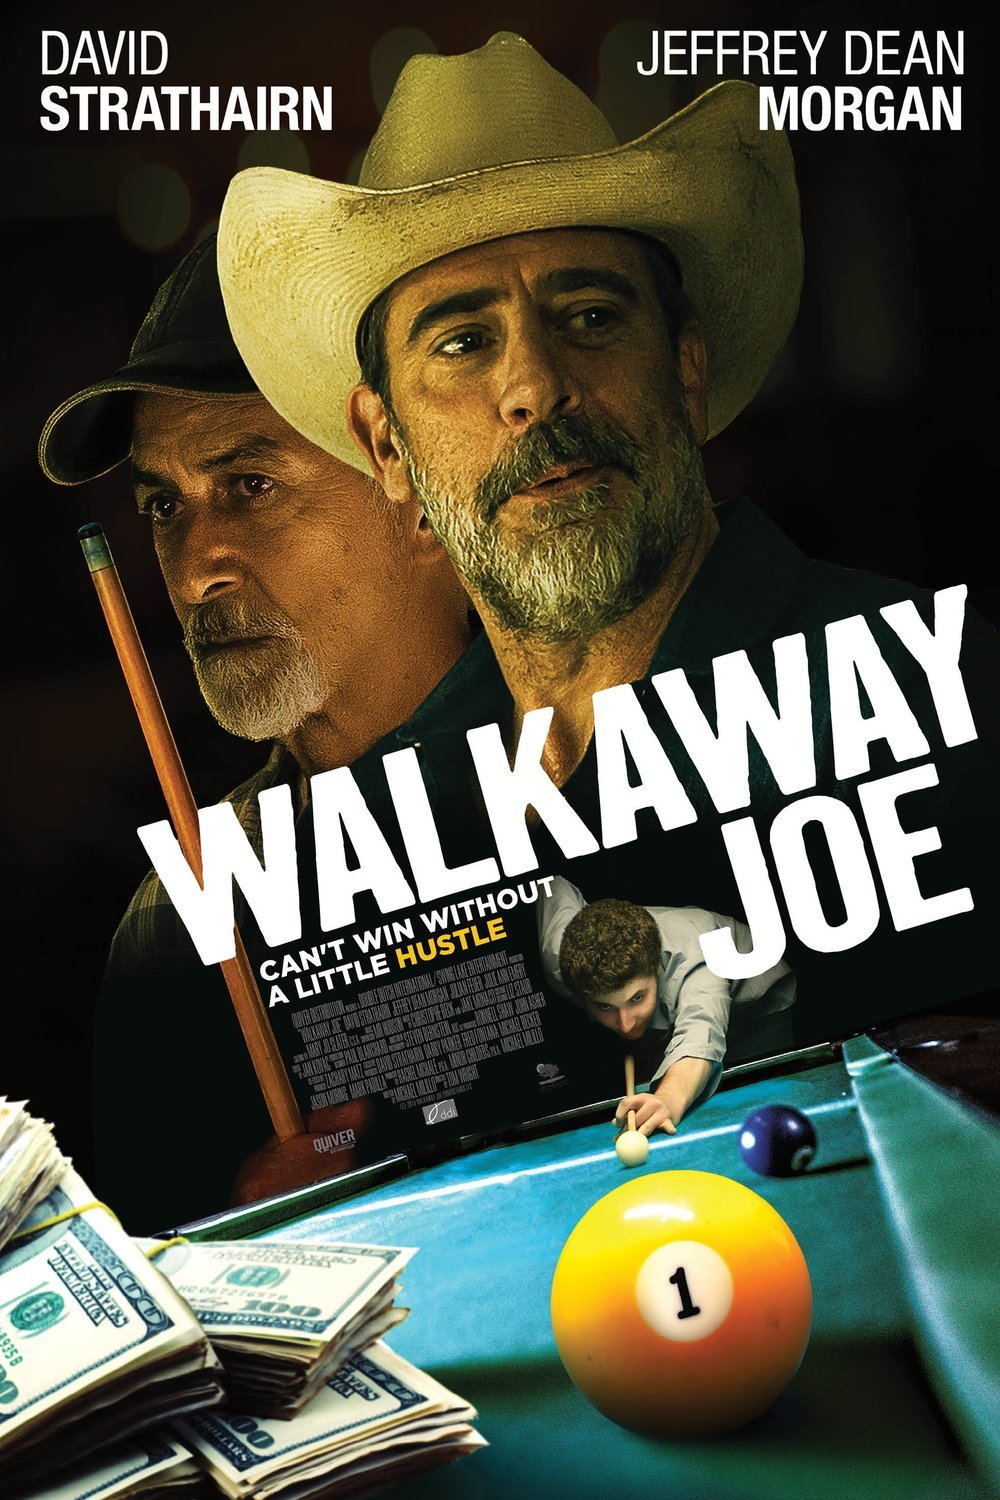 L'affiche du film Walkaway Joe